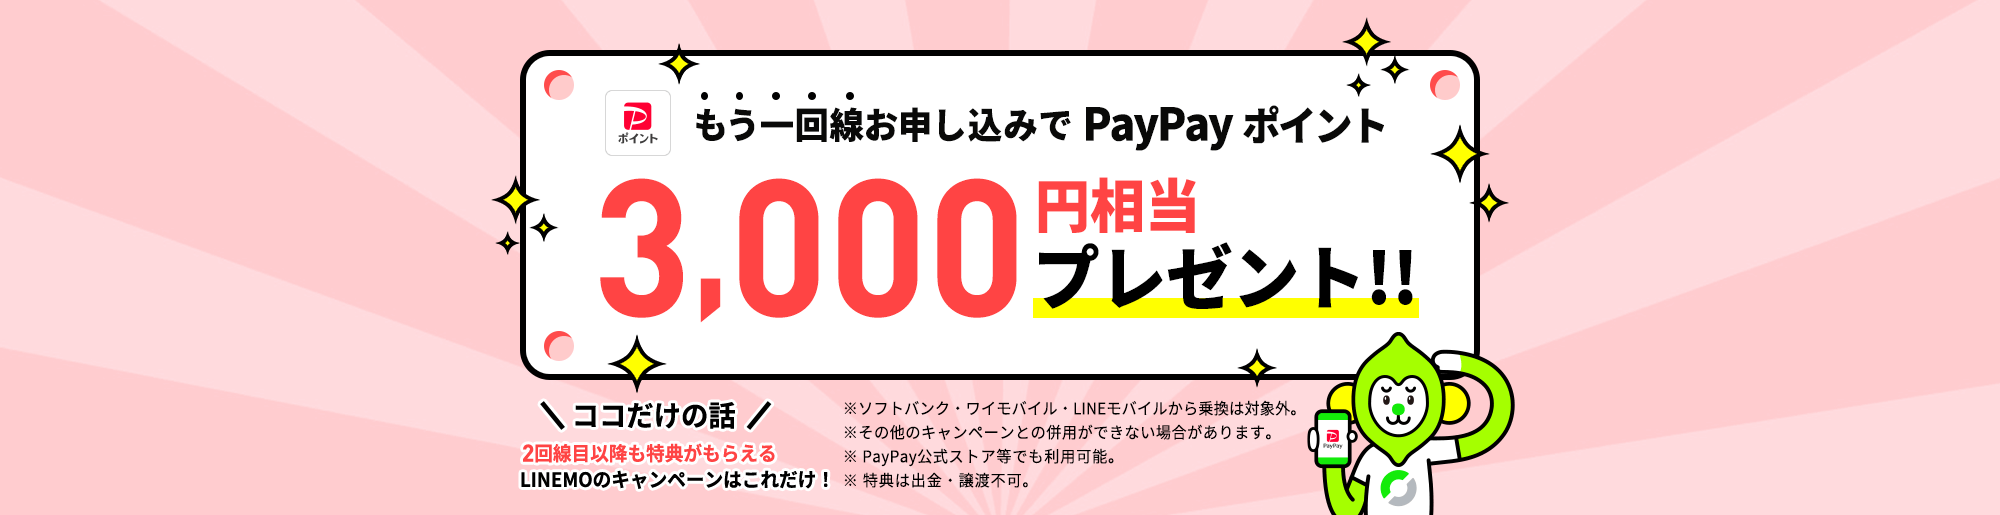 キャンペーン期間中に、当ページを経由して、LINEMOの「スマホプラン」または「ミニプラン」を新しい電話番号で契約、または他社からの乗り換えで契約で、PayPayポイントを3,000円相当プレゼントします。